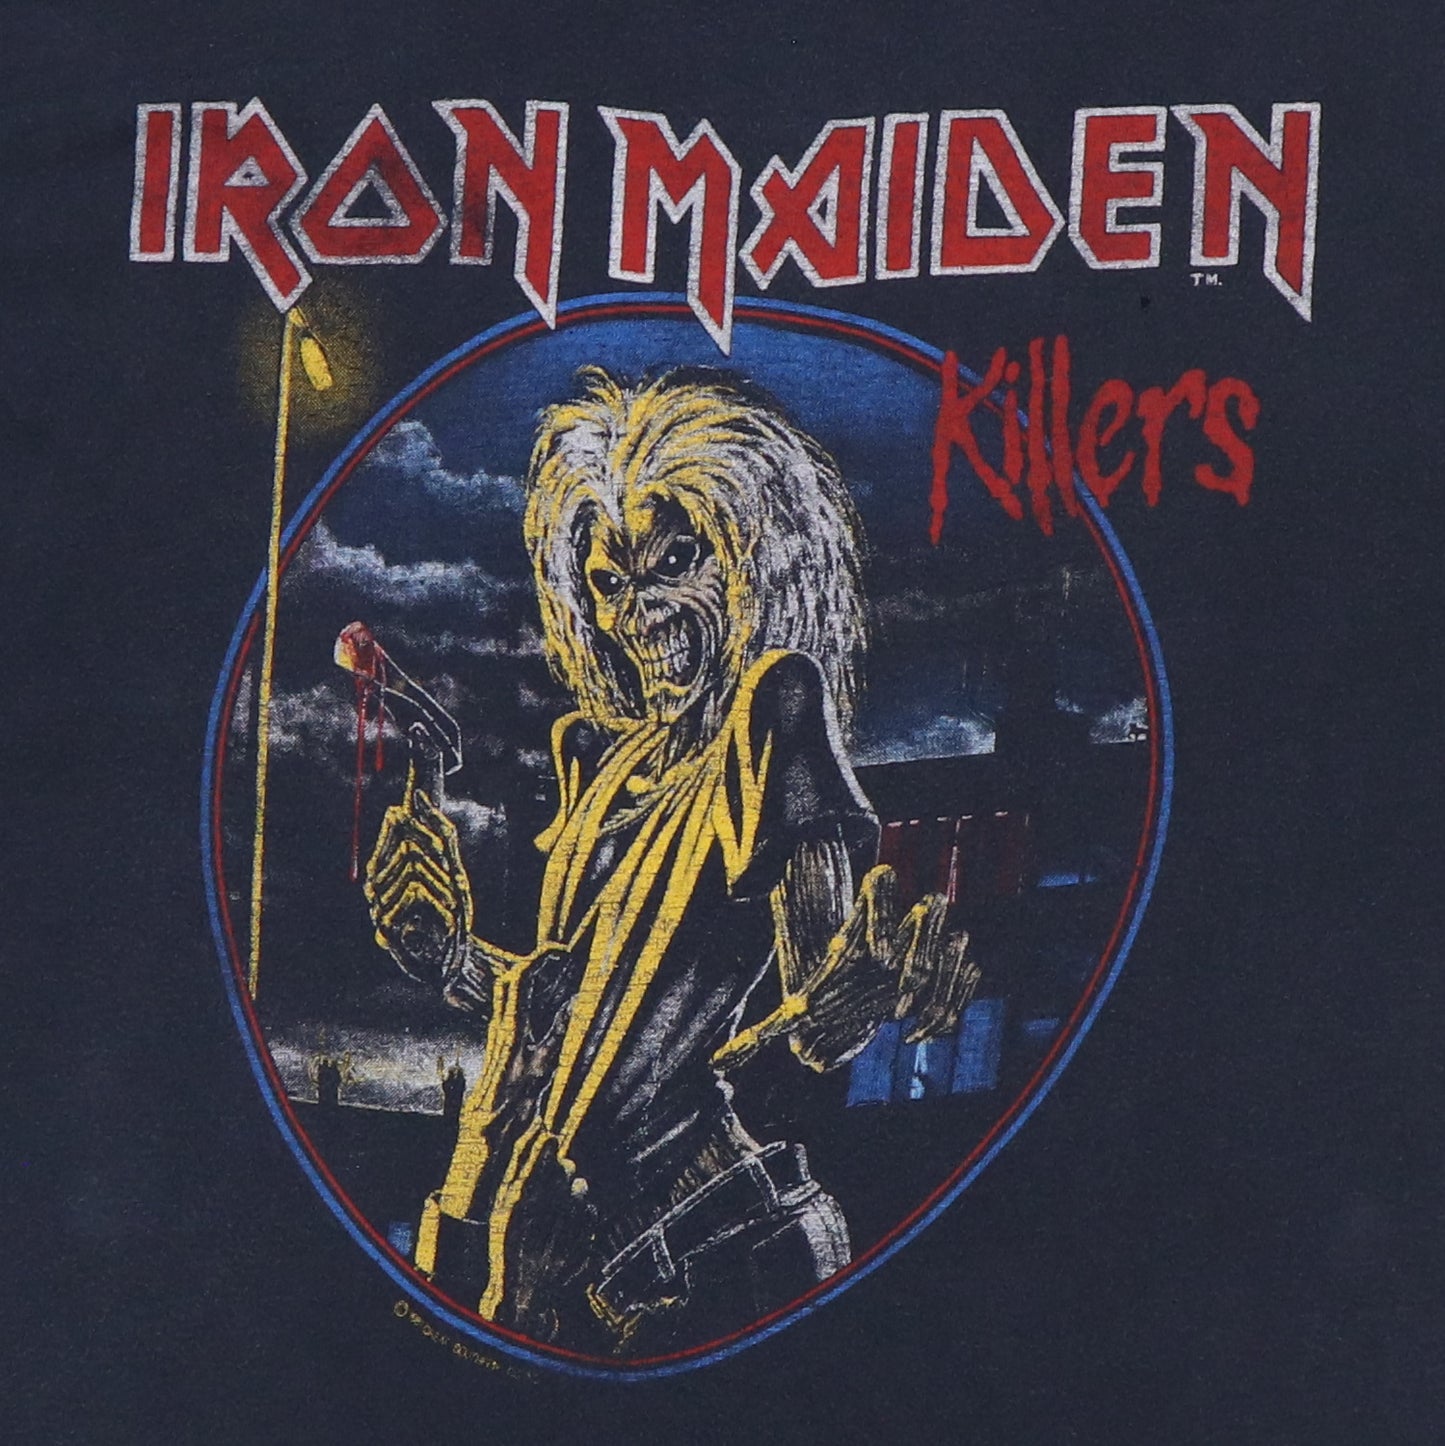 1981 Iron Maiden Killers Shirt